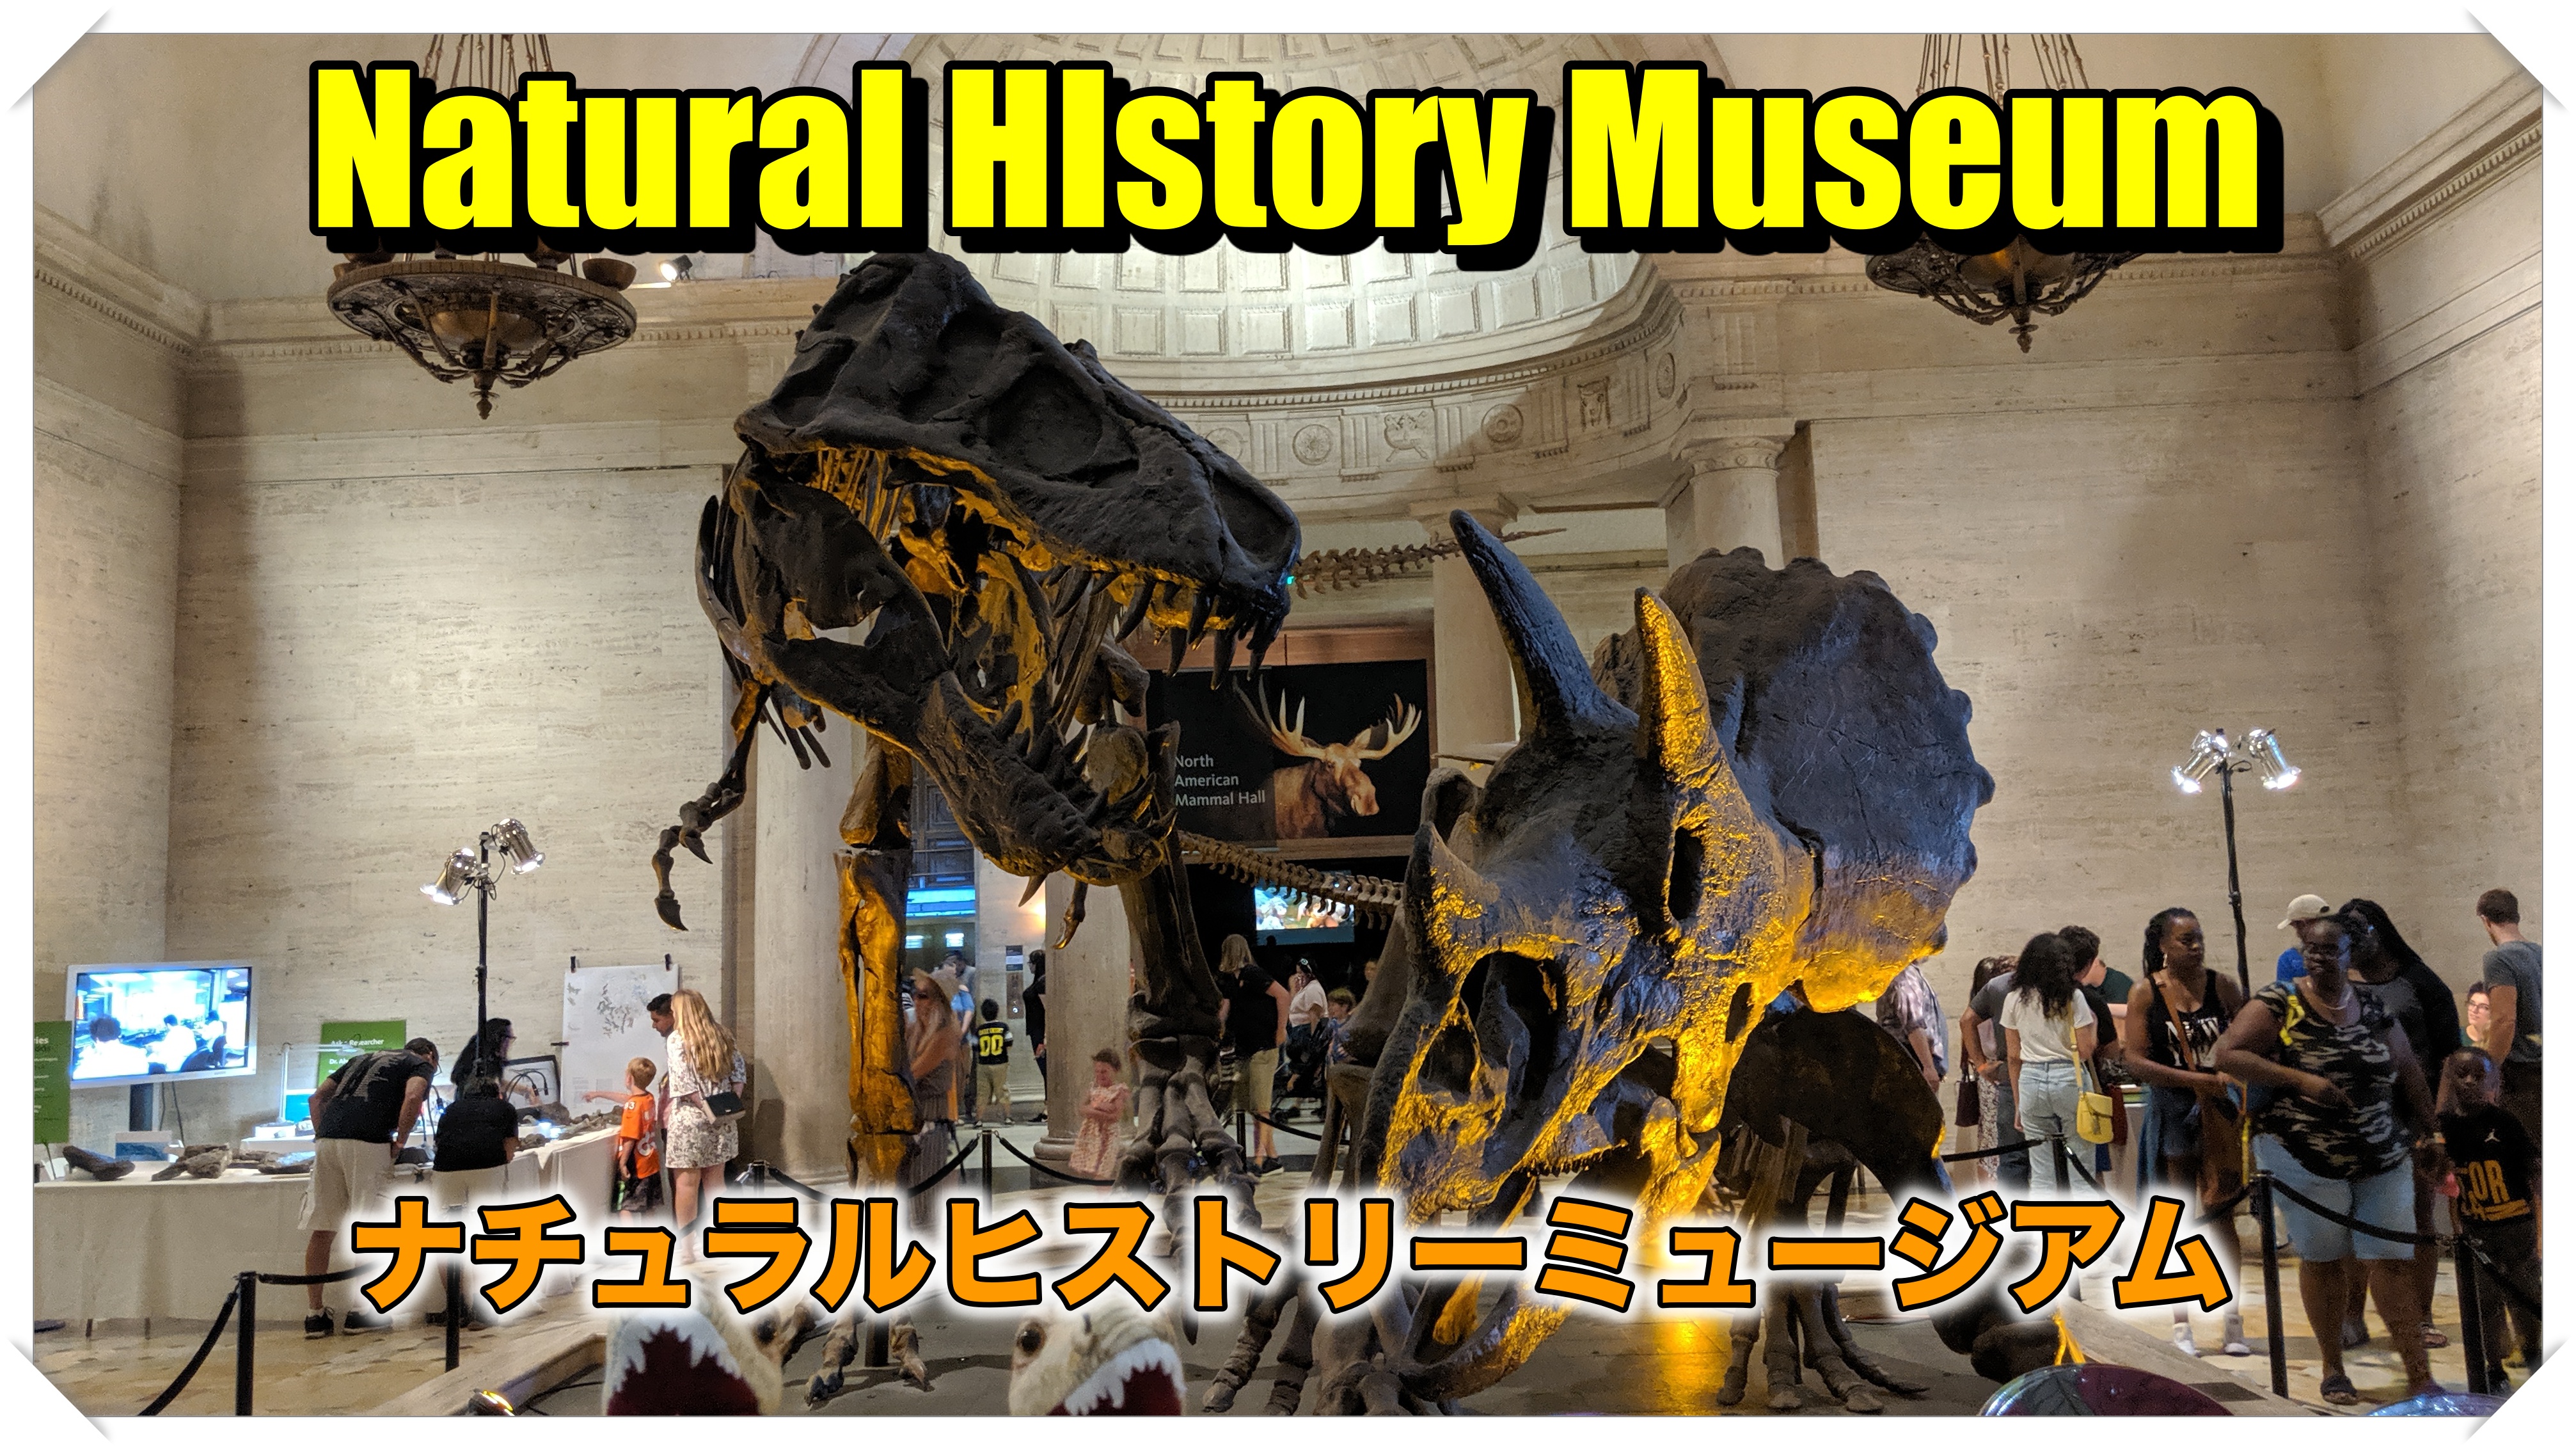 ロサンゼルス観光 自然史博物館ナチュラルヒストリーミュージアムに行く ロサンゼルス観光 エンタメ情報